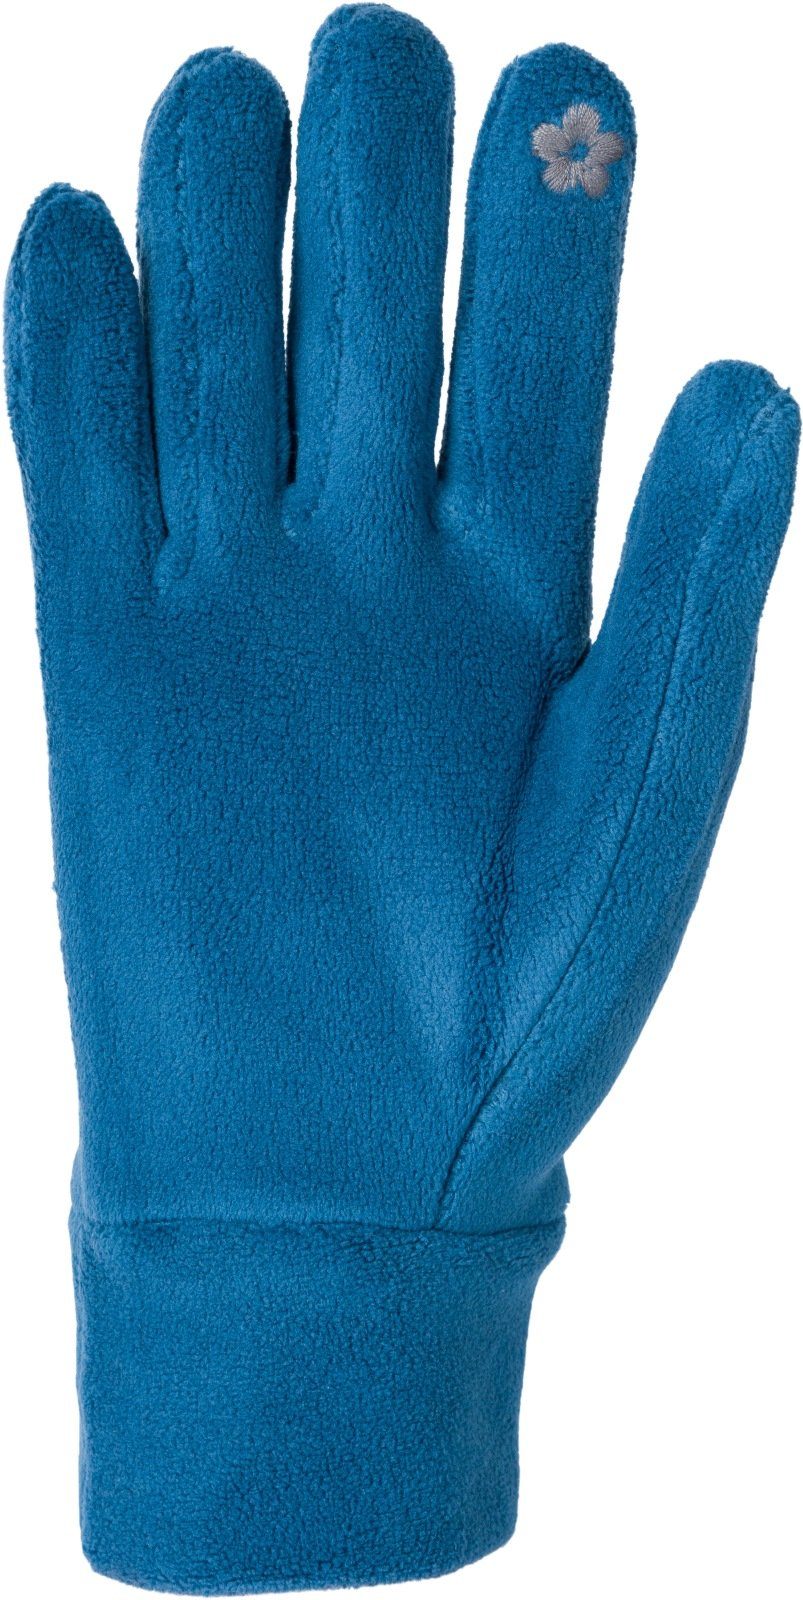 Fleecehandschuhe Petrol Handschuhe styleBREAKER Einfarbige Fleece Touchscreen